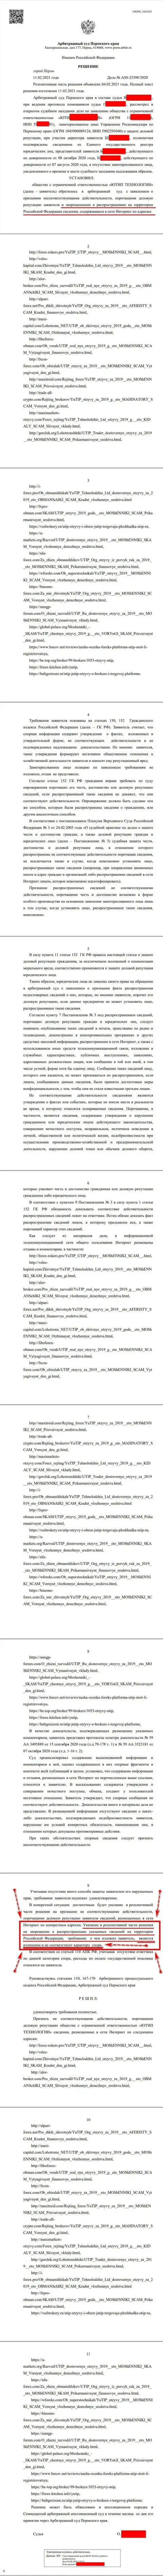 Решение Арбитражного суда города Перми по судебному иску мошенников UTIP Org в отношении сайта Форекс-Брокерс Про